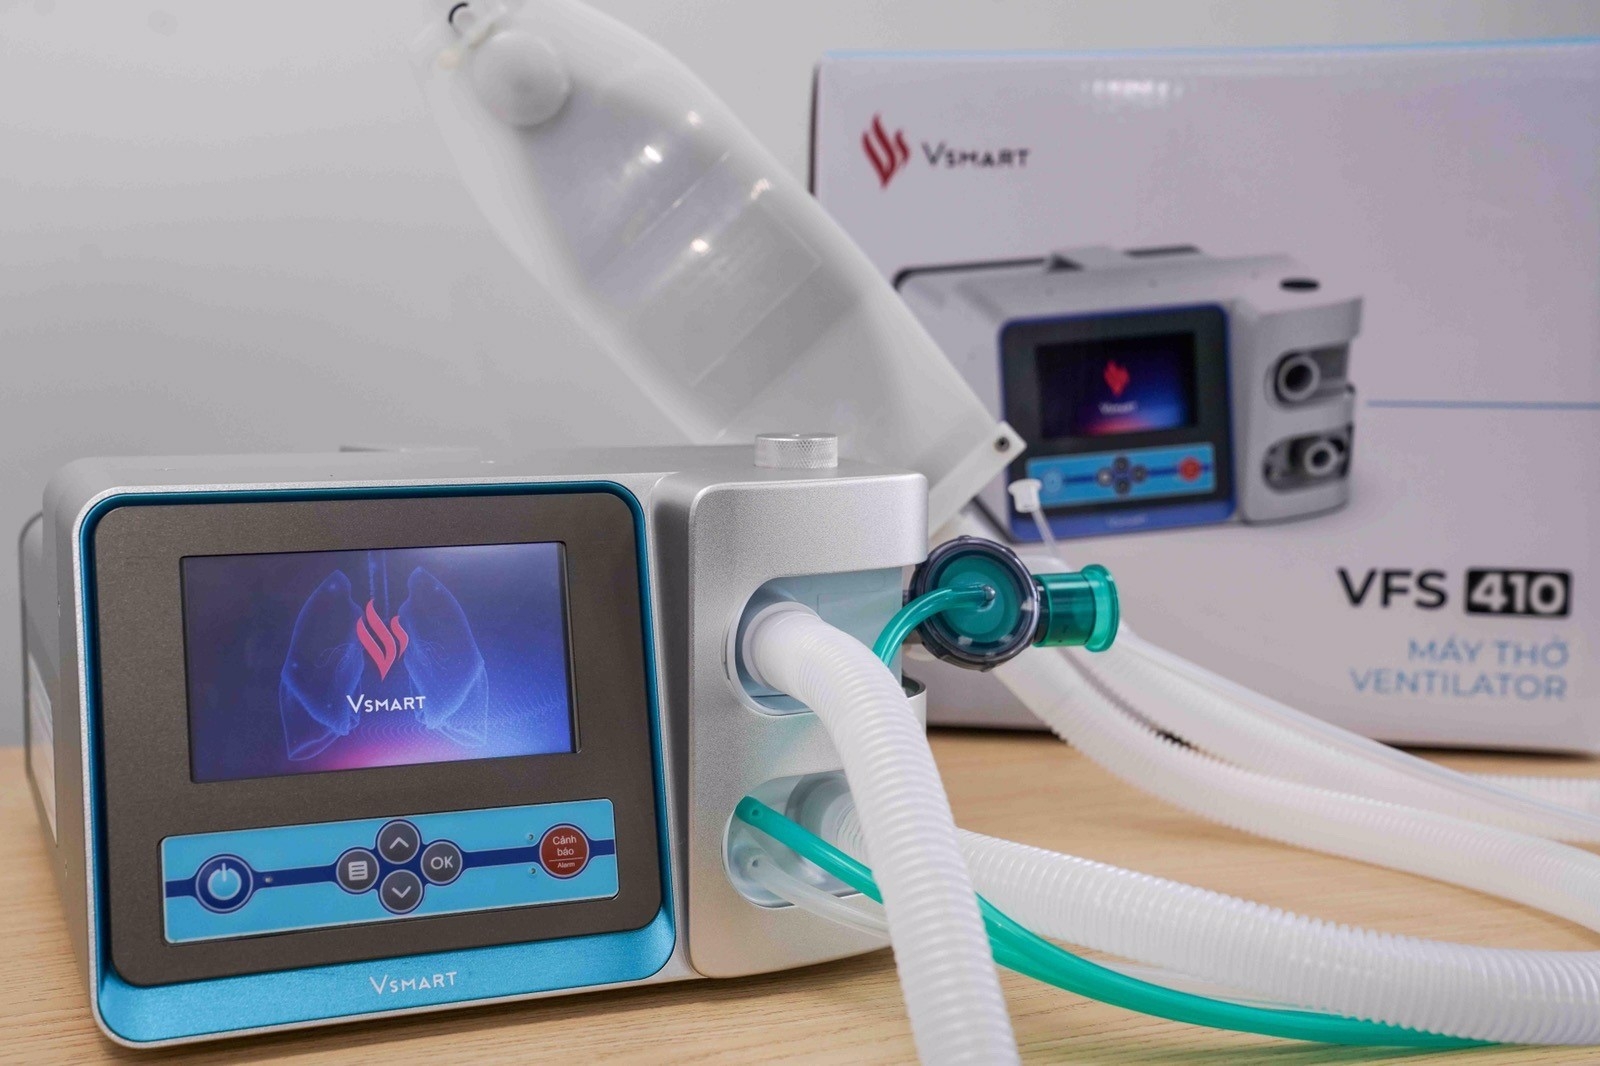 Vingroup completes two VSmart ventilator models for hostpital use